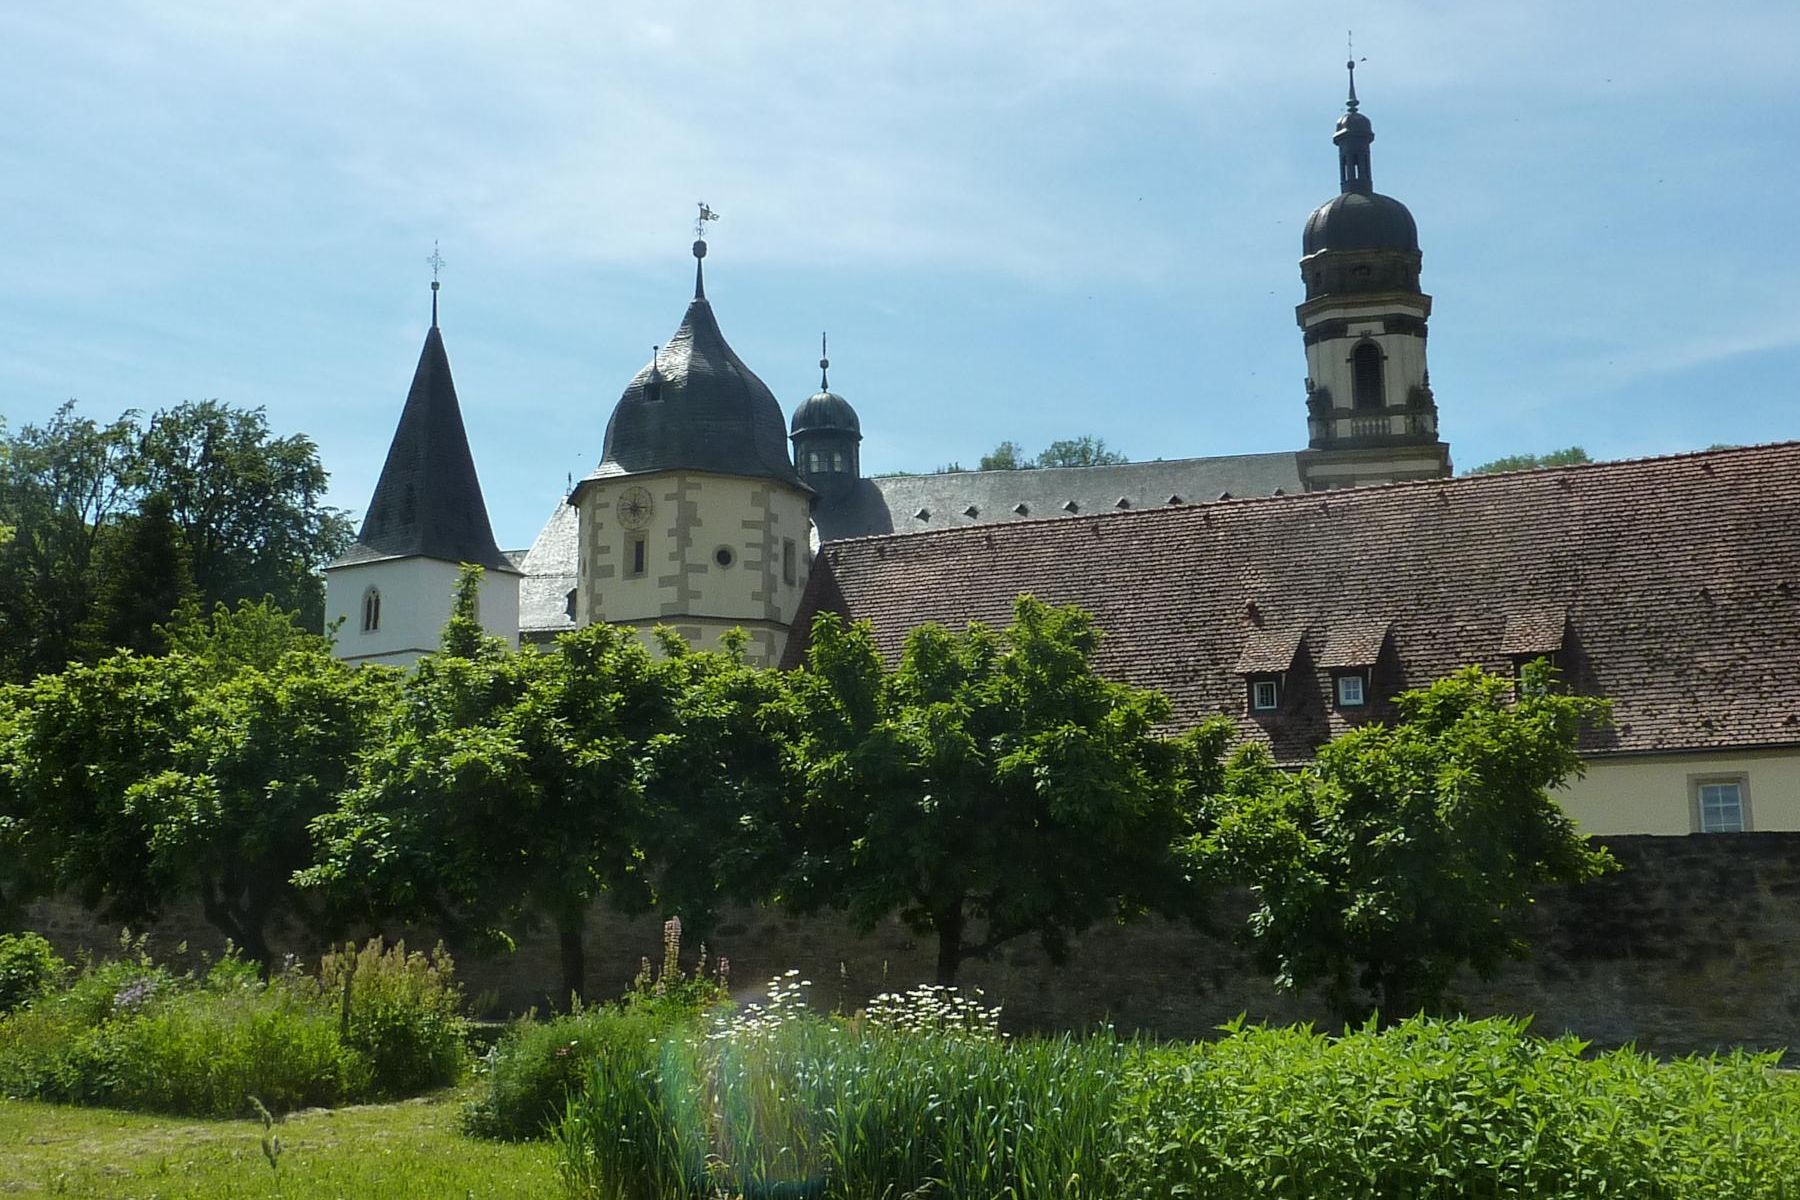 Kloster Schöntal, Abteigarten mit Mispelbäumen